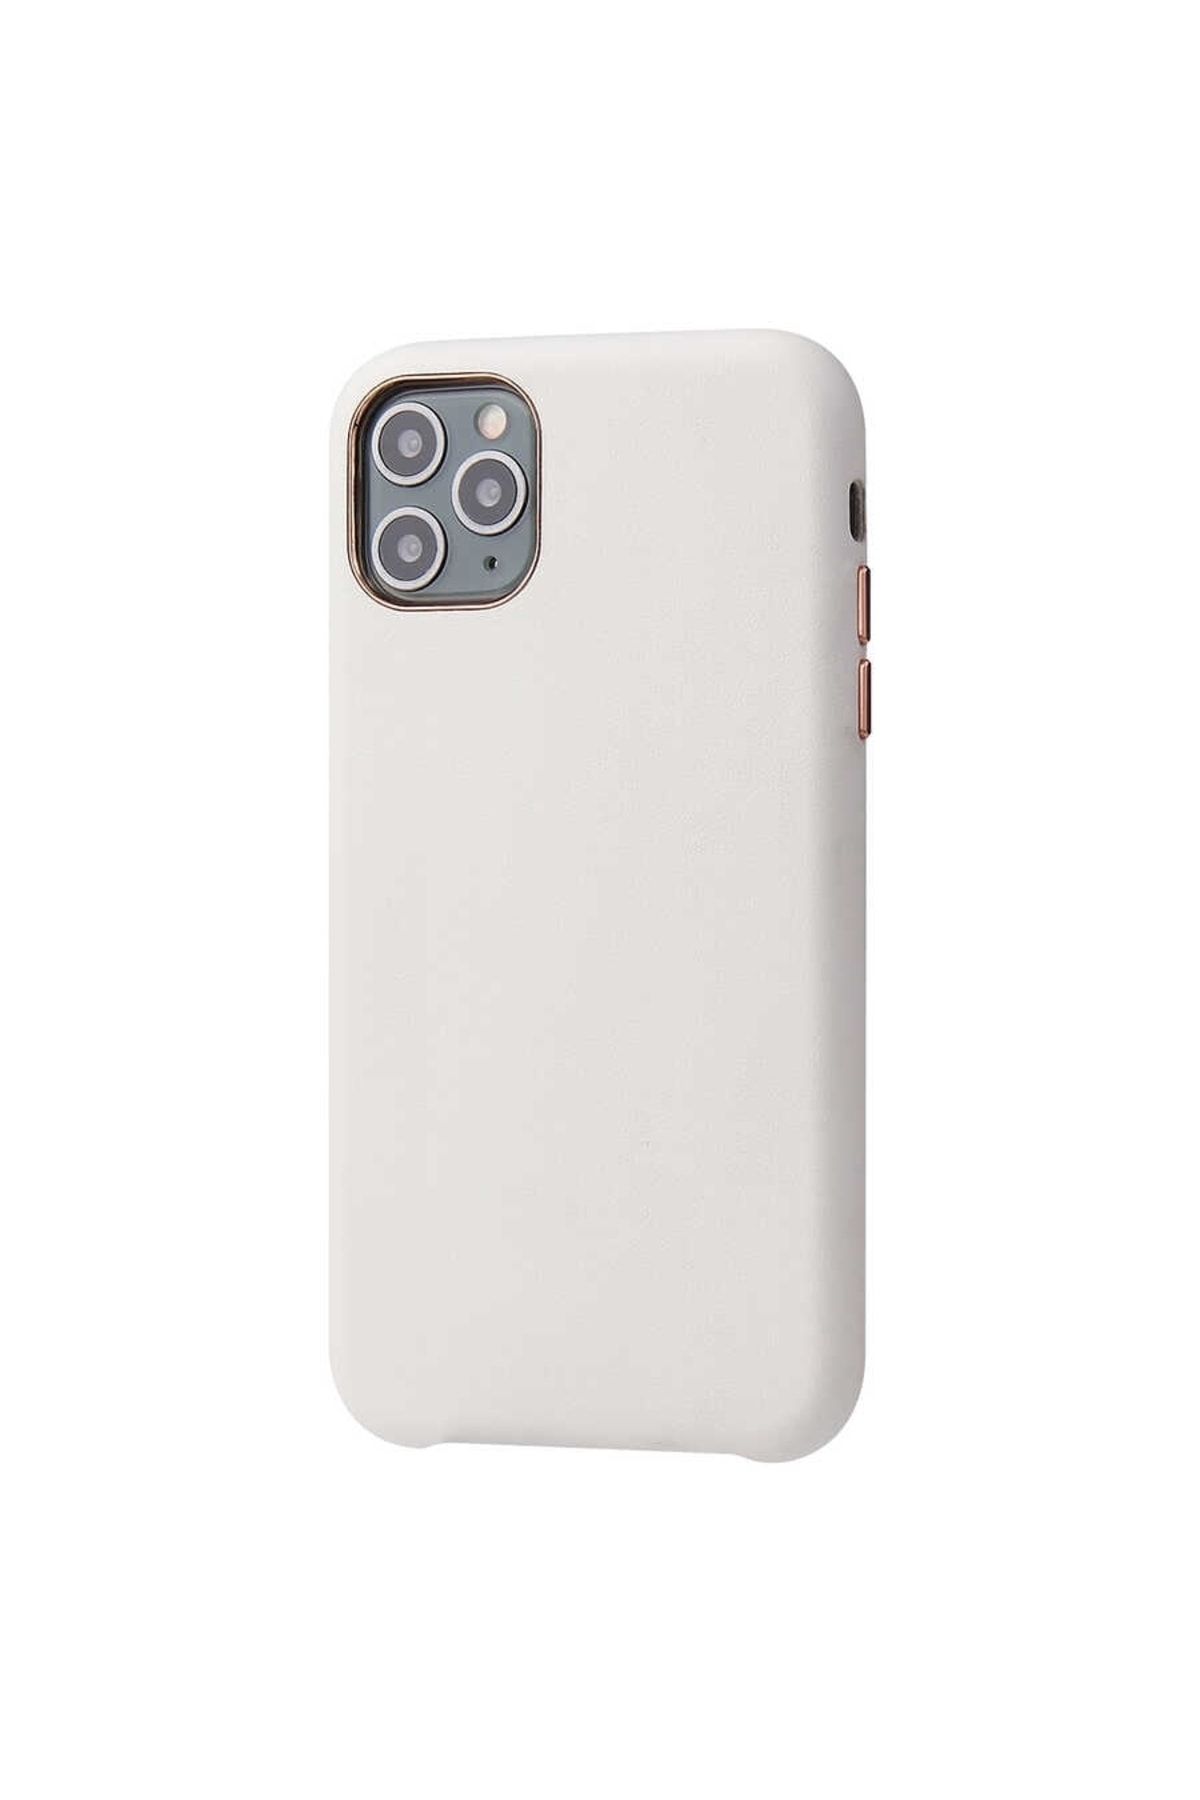 Gpack Apple iPhone 11 Pro Max Kılıf Eyzi Deri Silikon Lüx Tasarım Beyaz